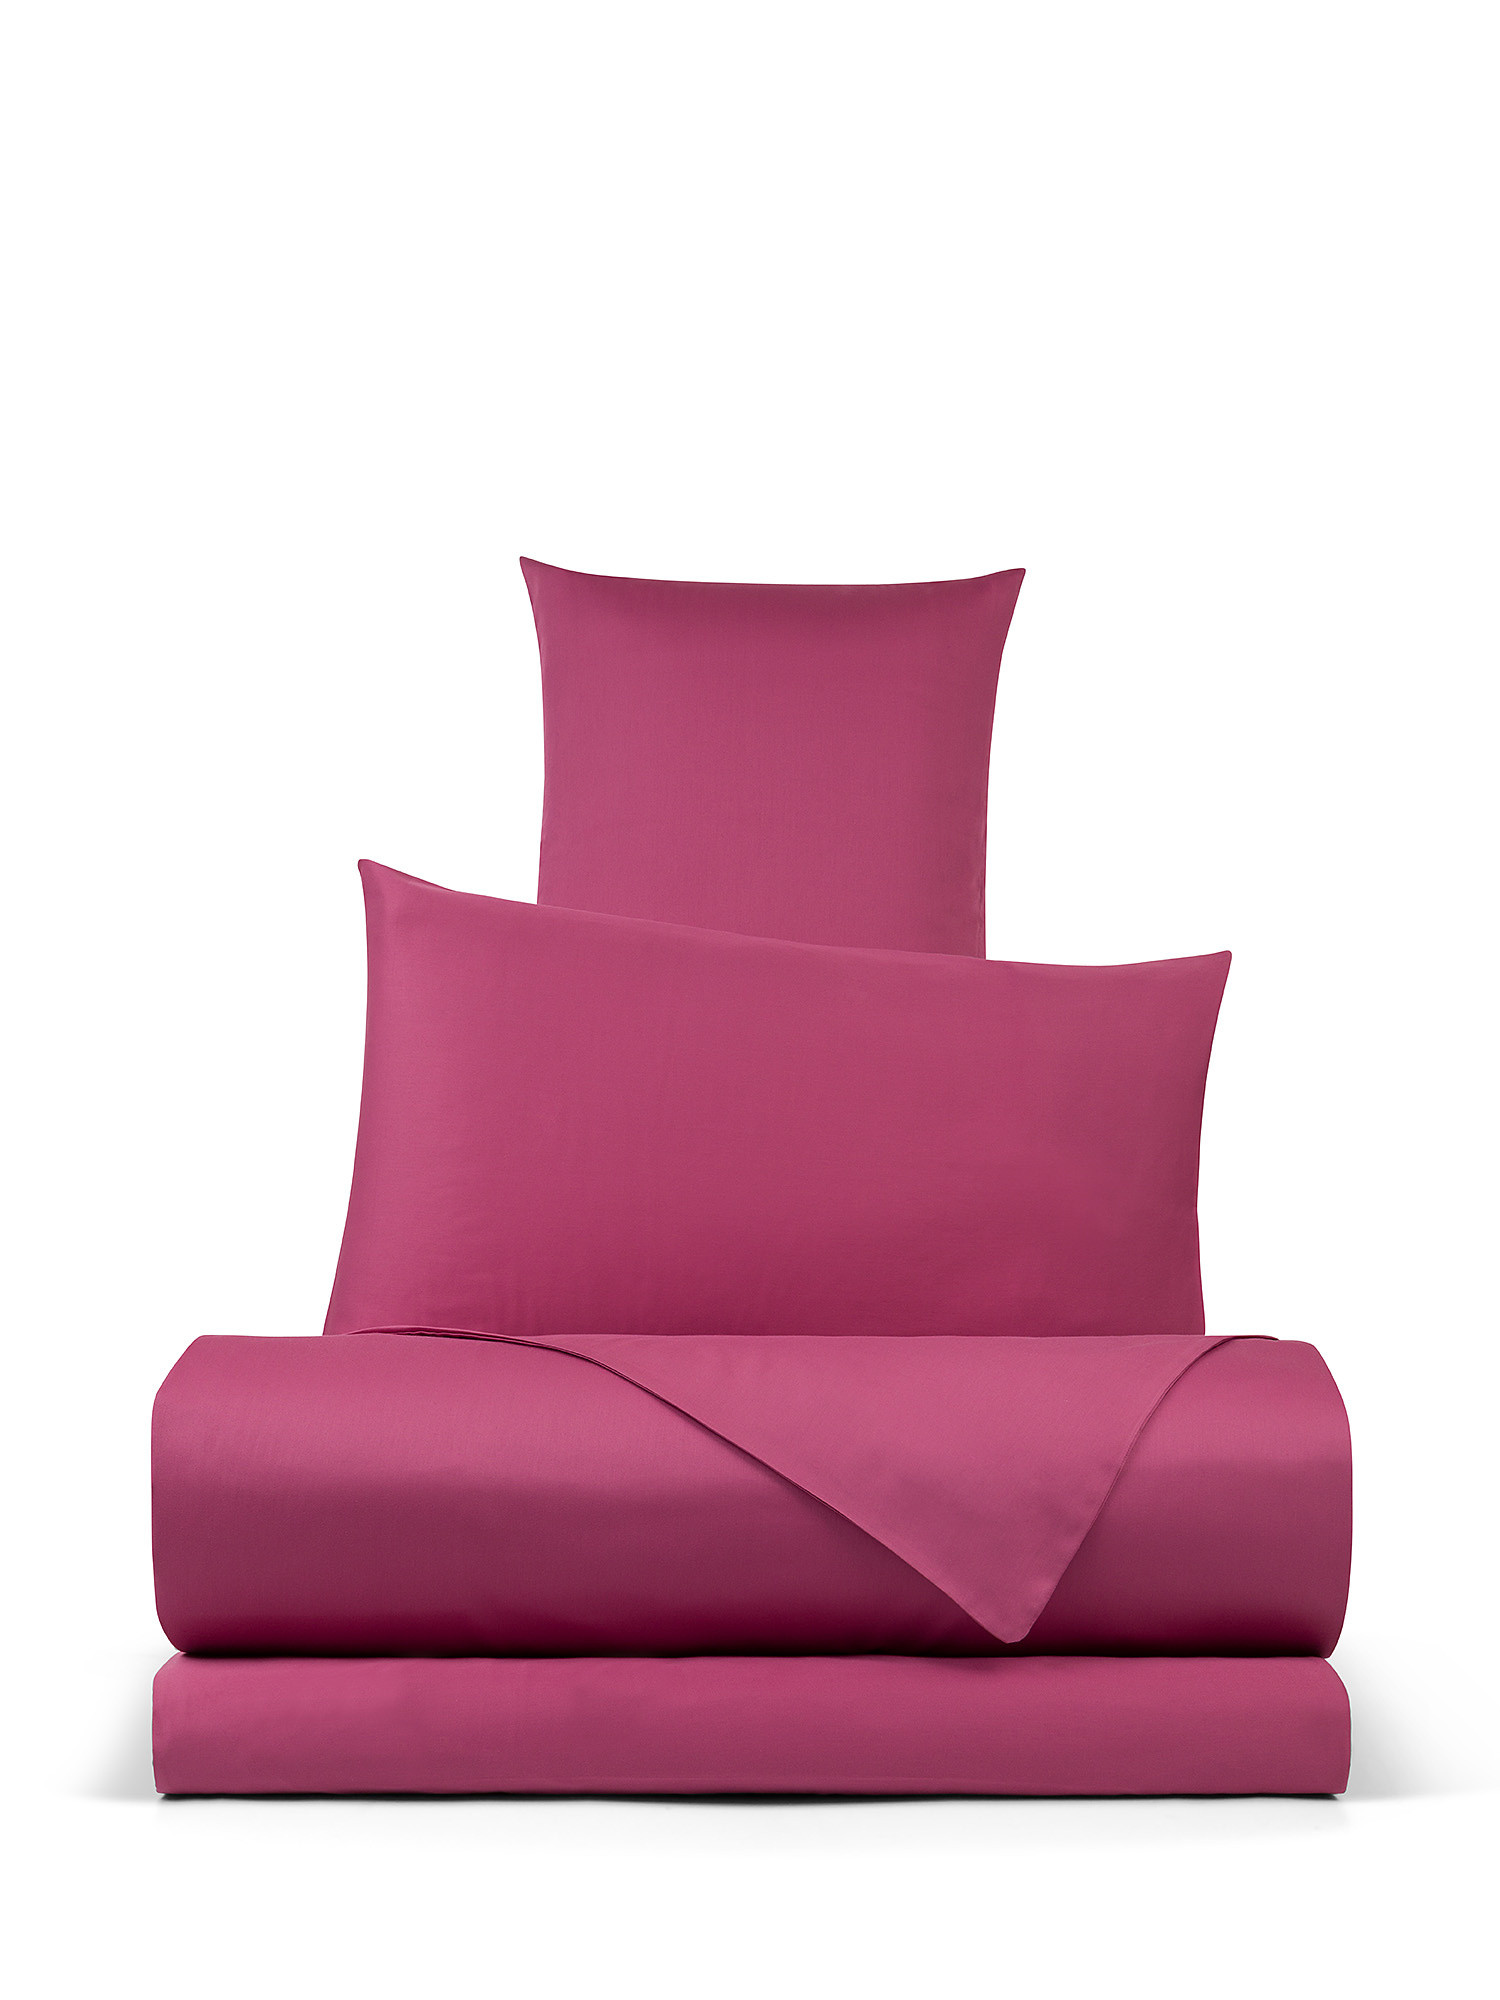 Solid color cotton satin duvet cover set, Pink, large image number 0